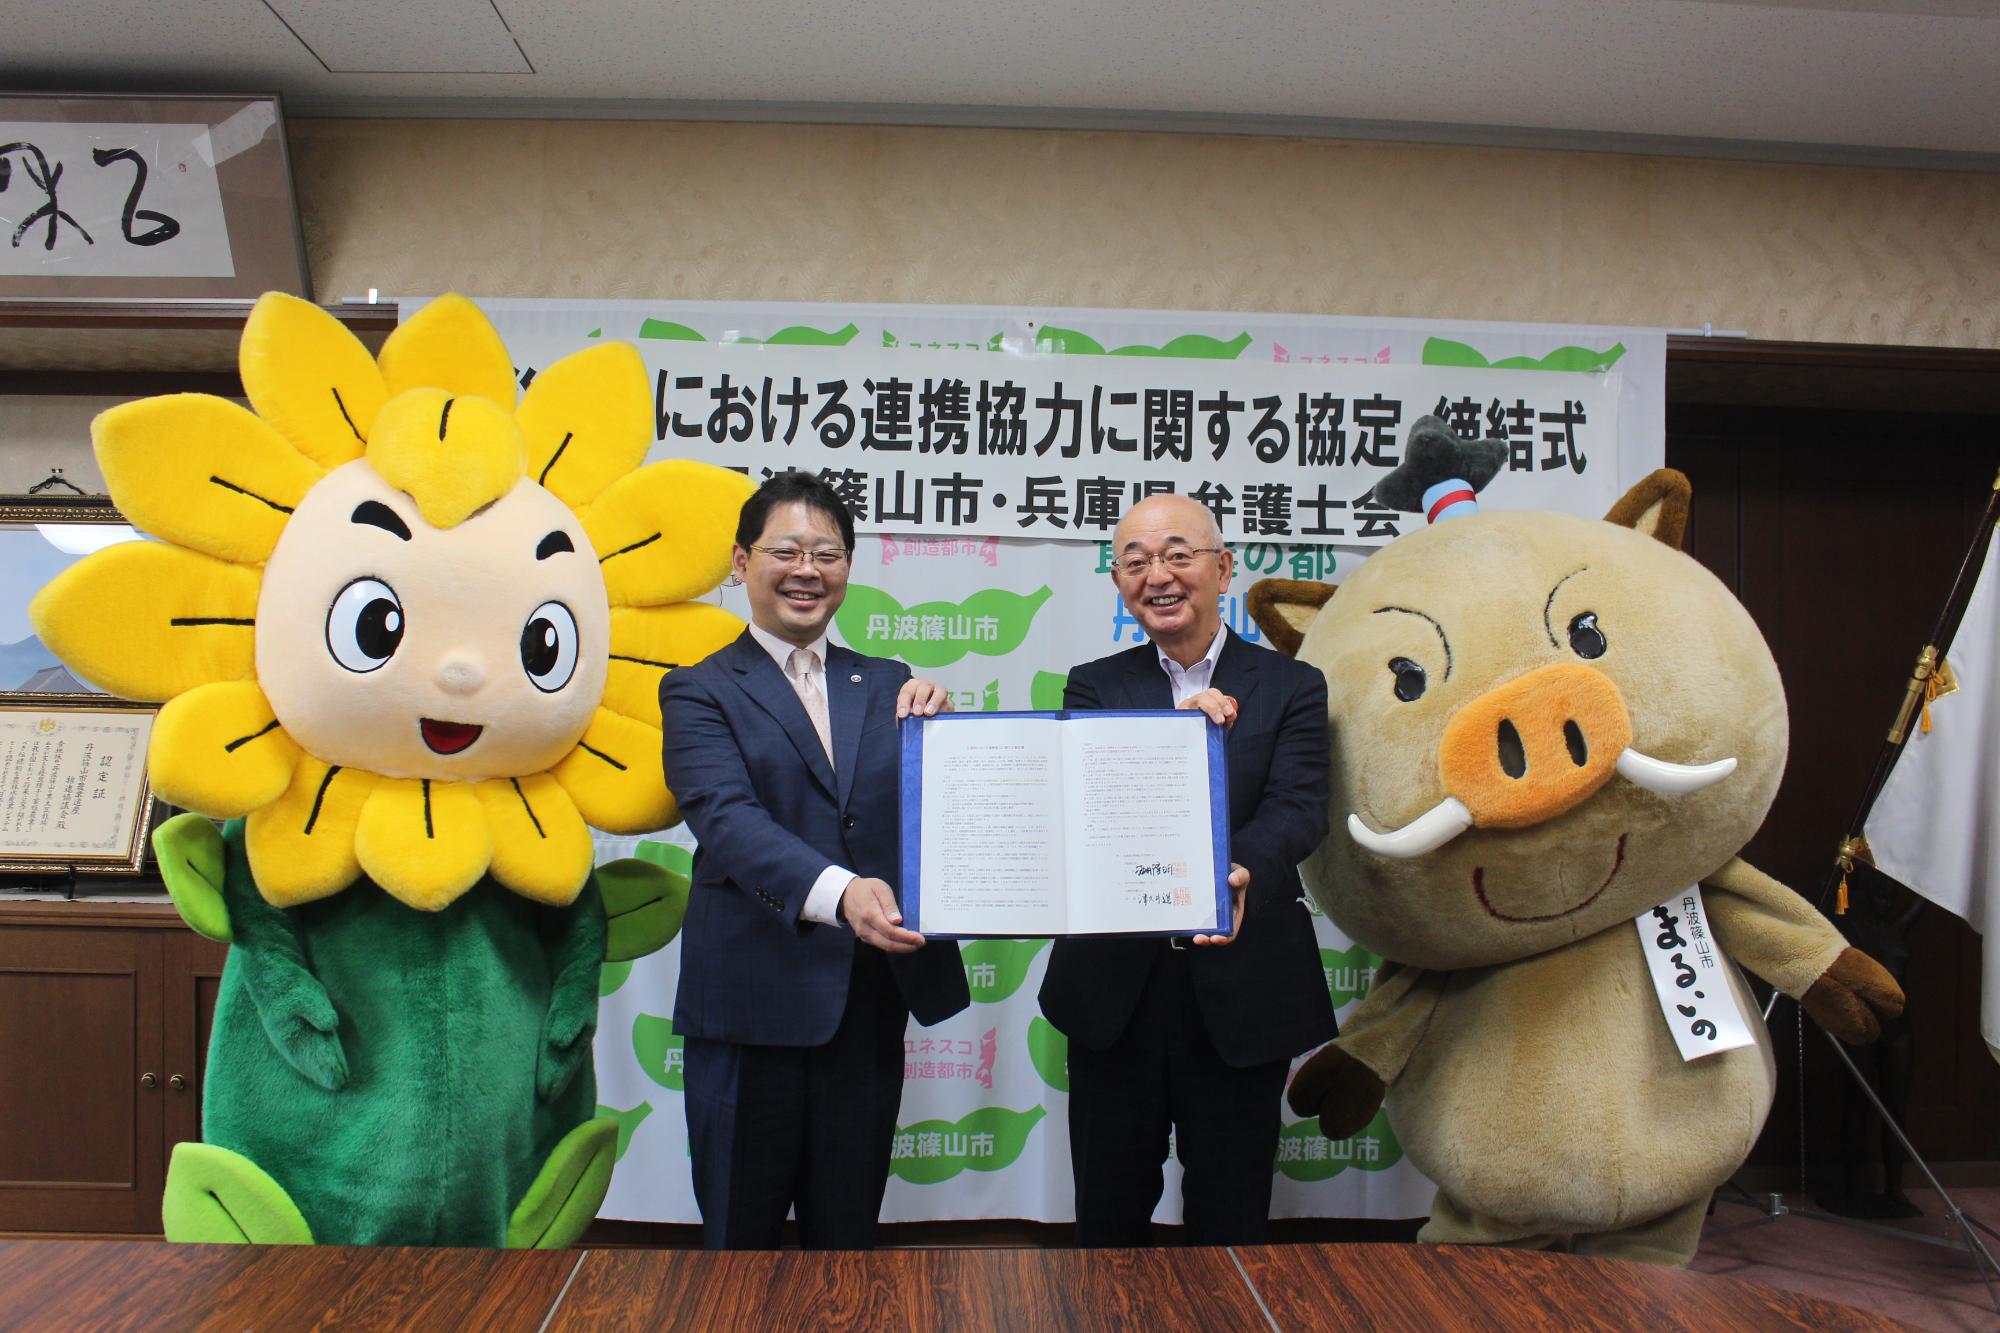 市長と兵庫県弁護士会会長が、協定書を一緒に持っている。隣にはマスコットキャラクターのまるいのとヒマリオンが並んでいる。